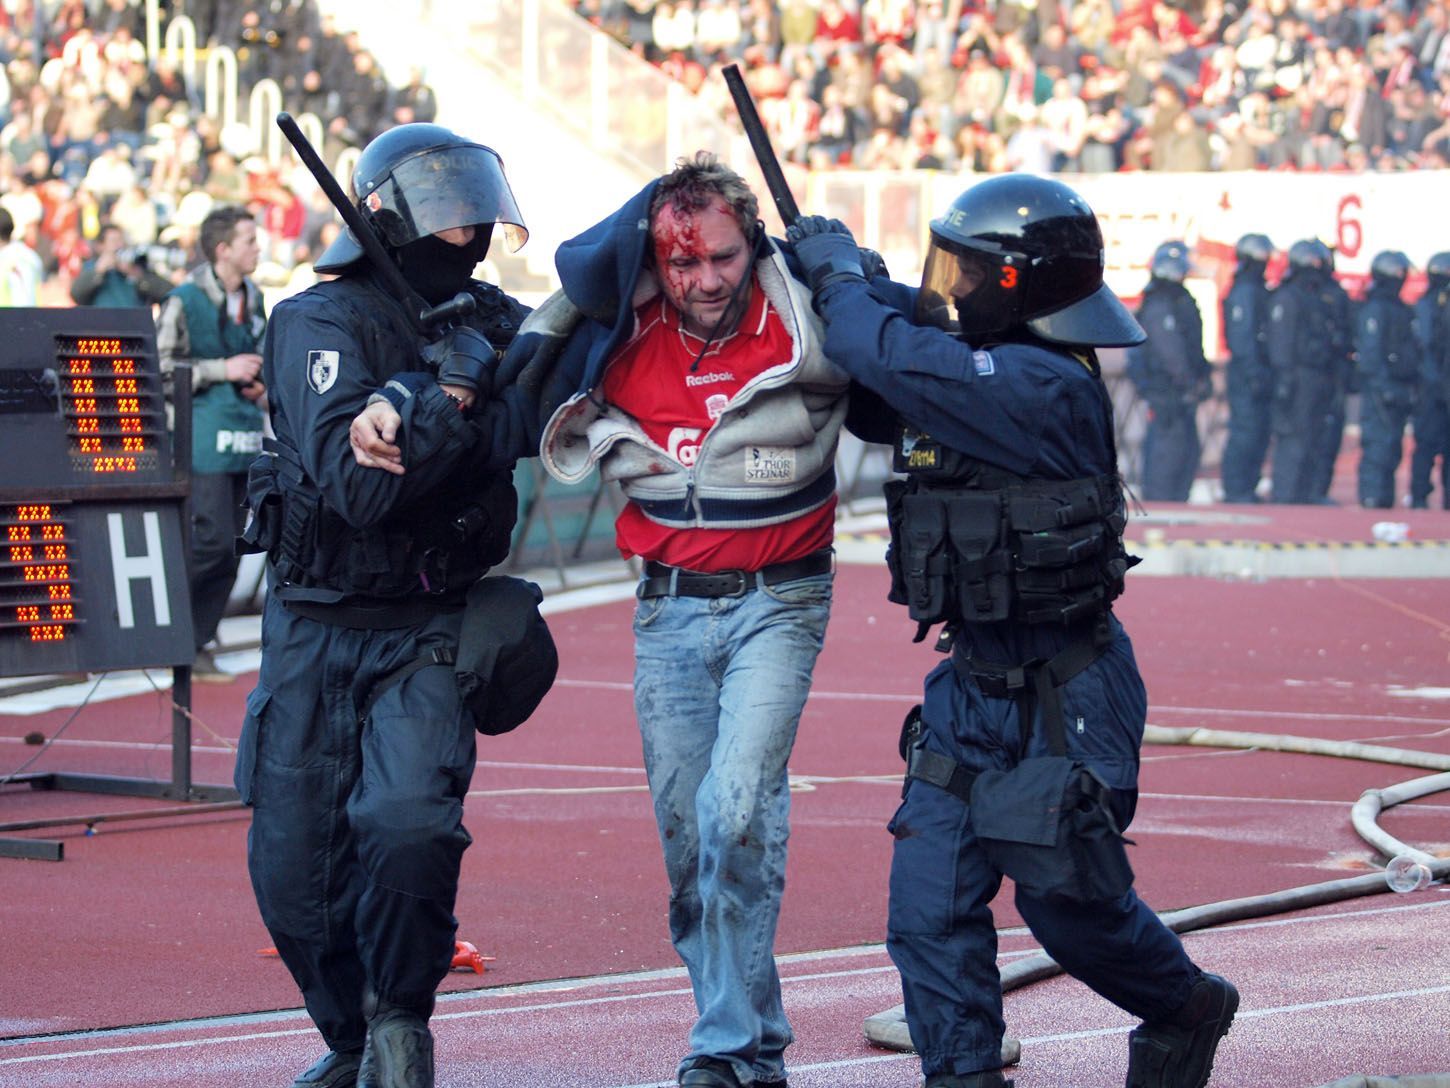 Bitka fotbalových fanoušků klubu AC Sparta Praha